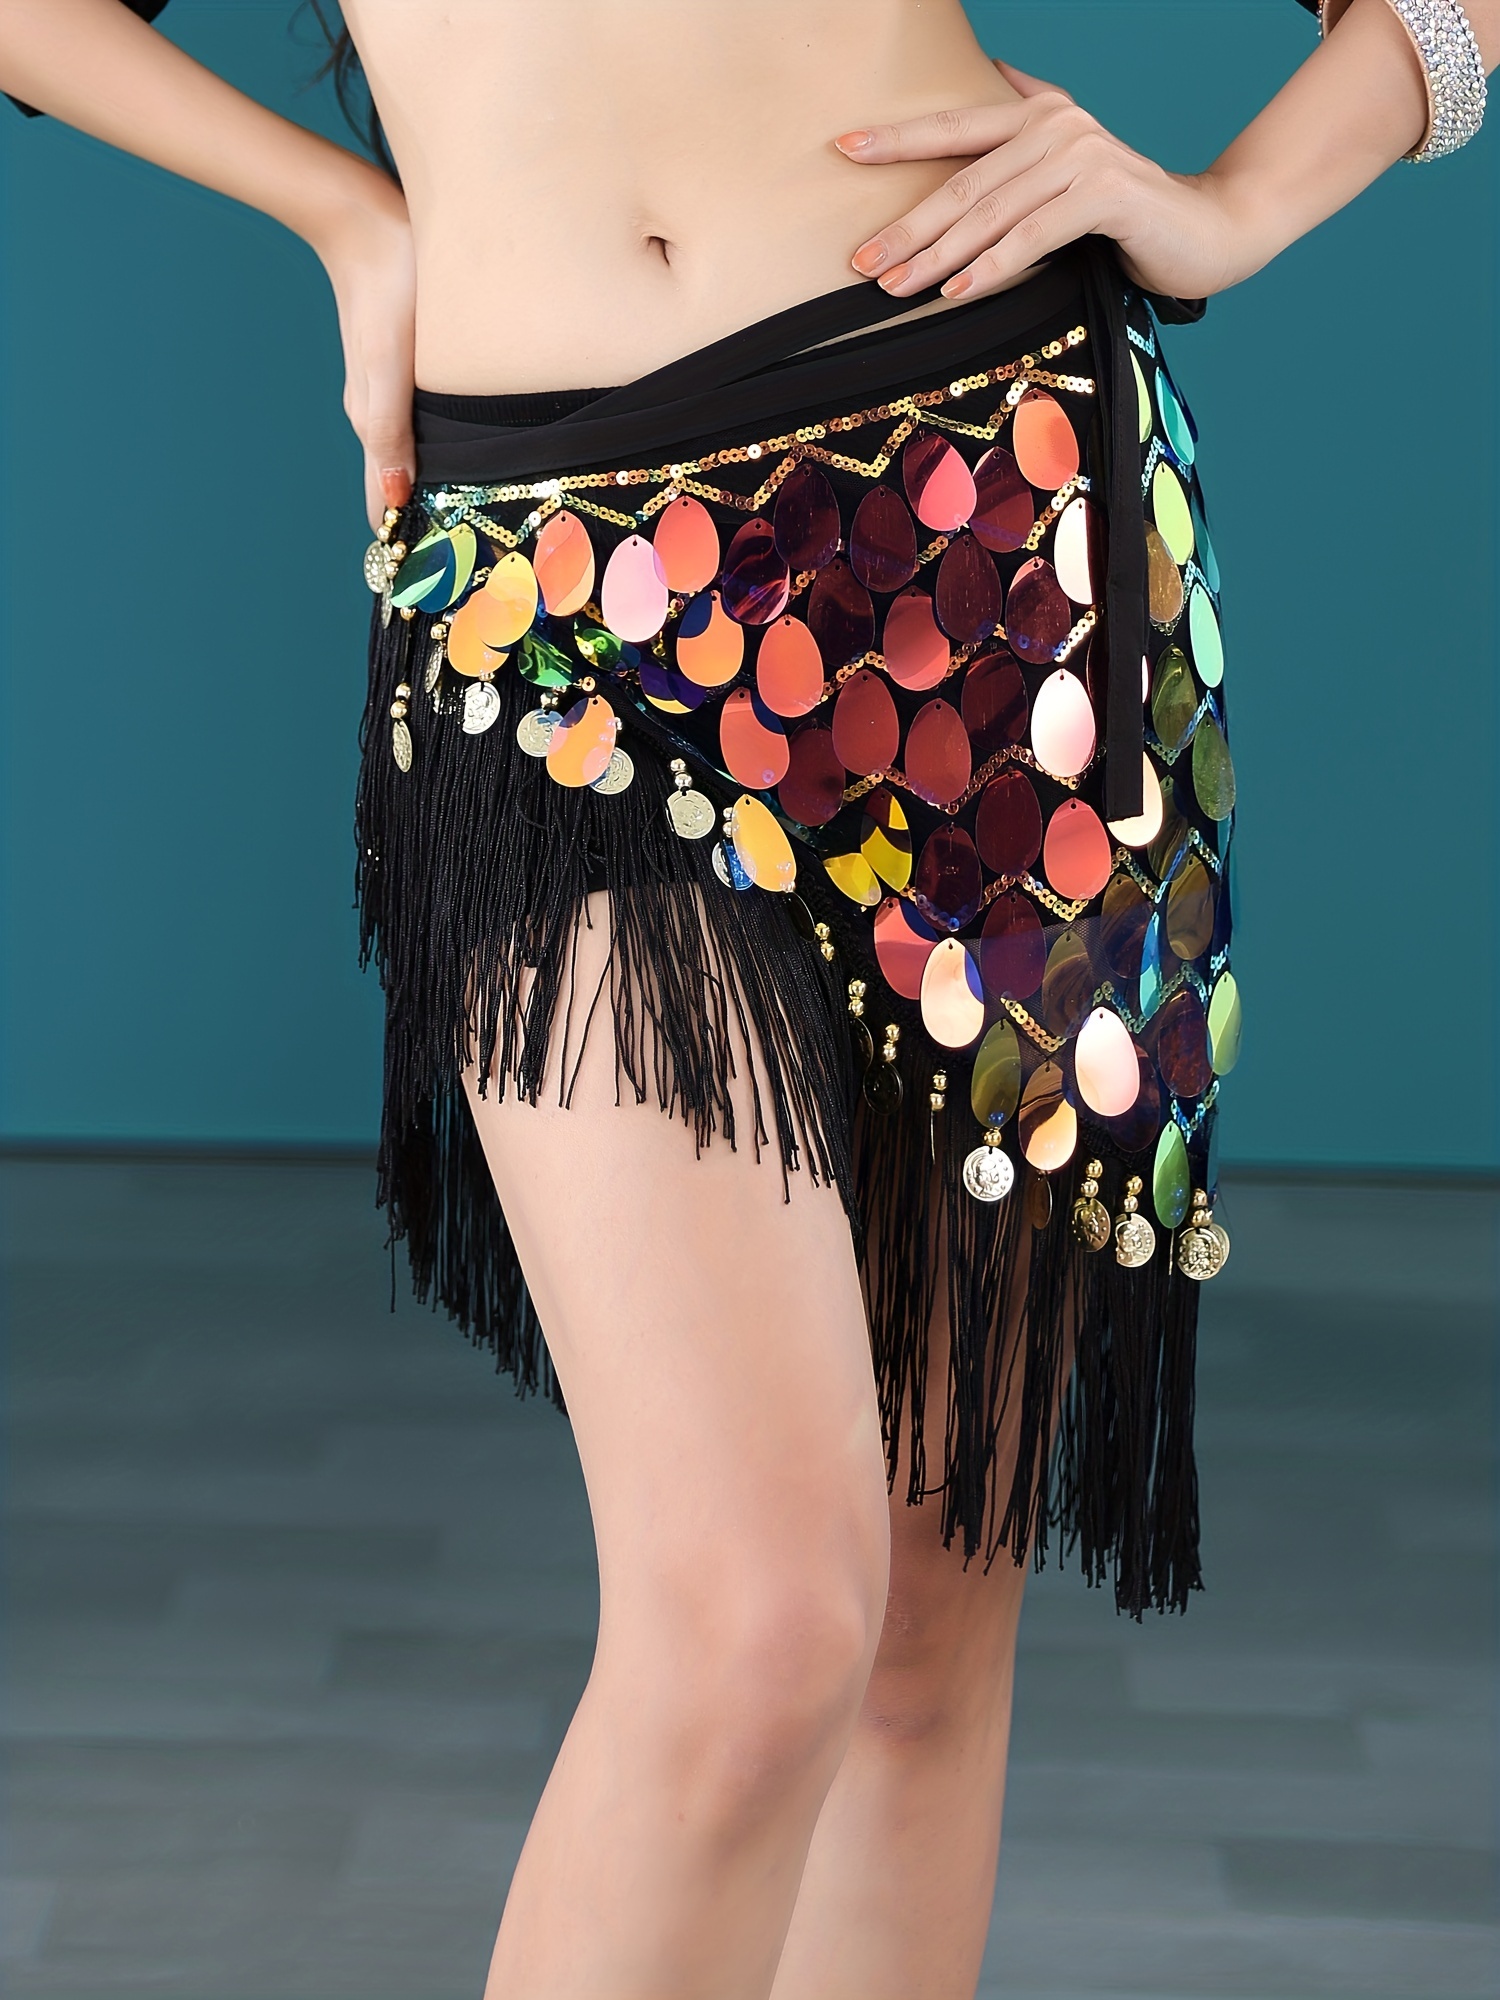 Sequin Butterfly Crop Top Belly Dance Rave Tribal Dance Wear Club Bra Tops  Low-Cut Tube Top Rave Tank Vest Bandage Butterfly Bra